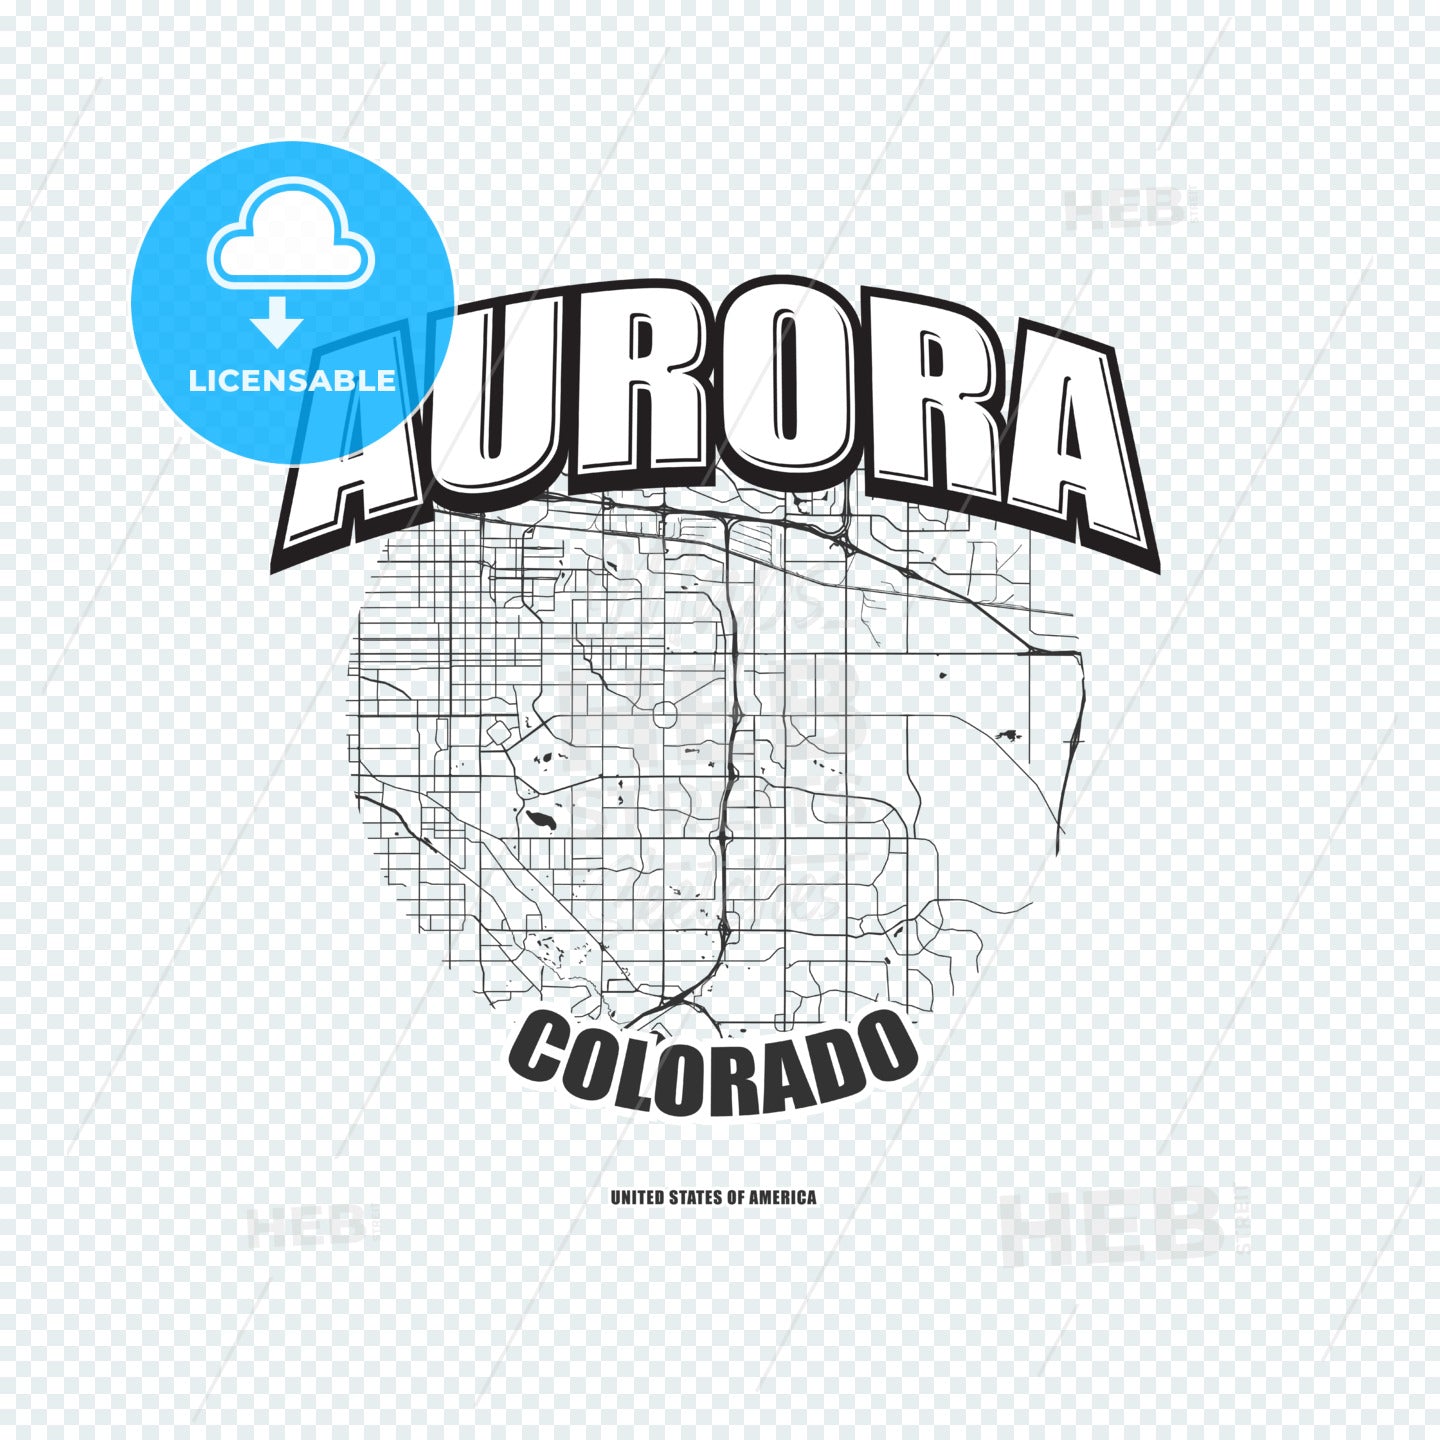 Aurora, Colorado, logo artwork – instant download